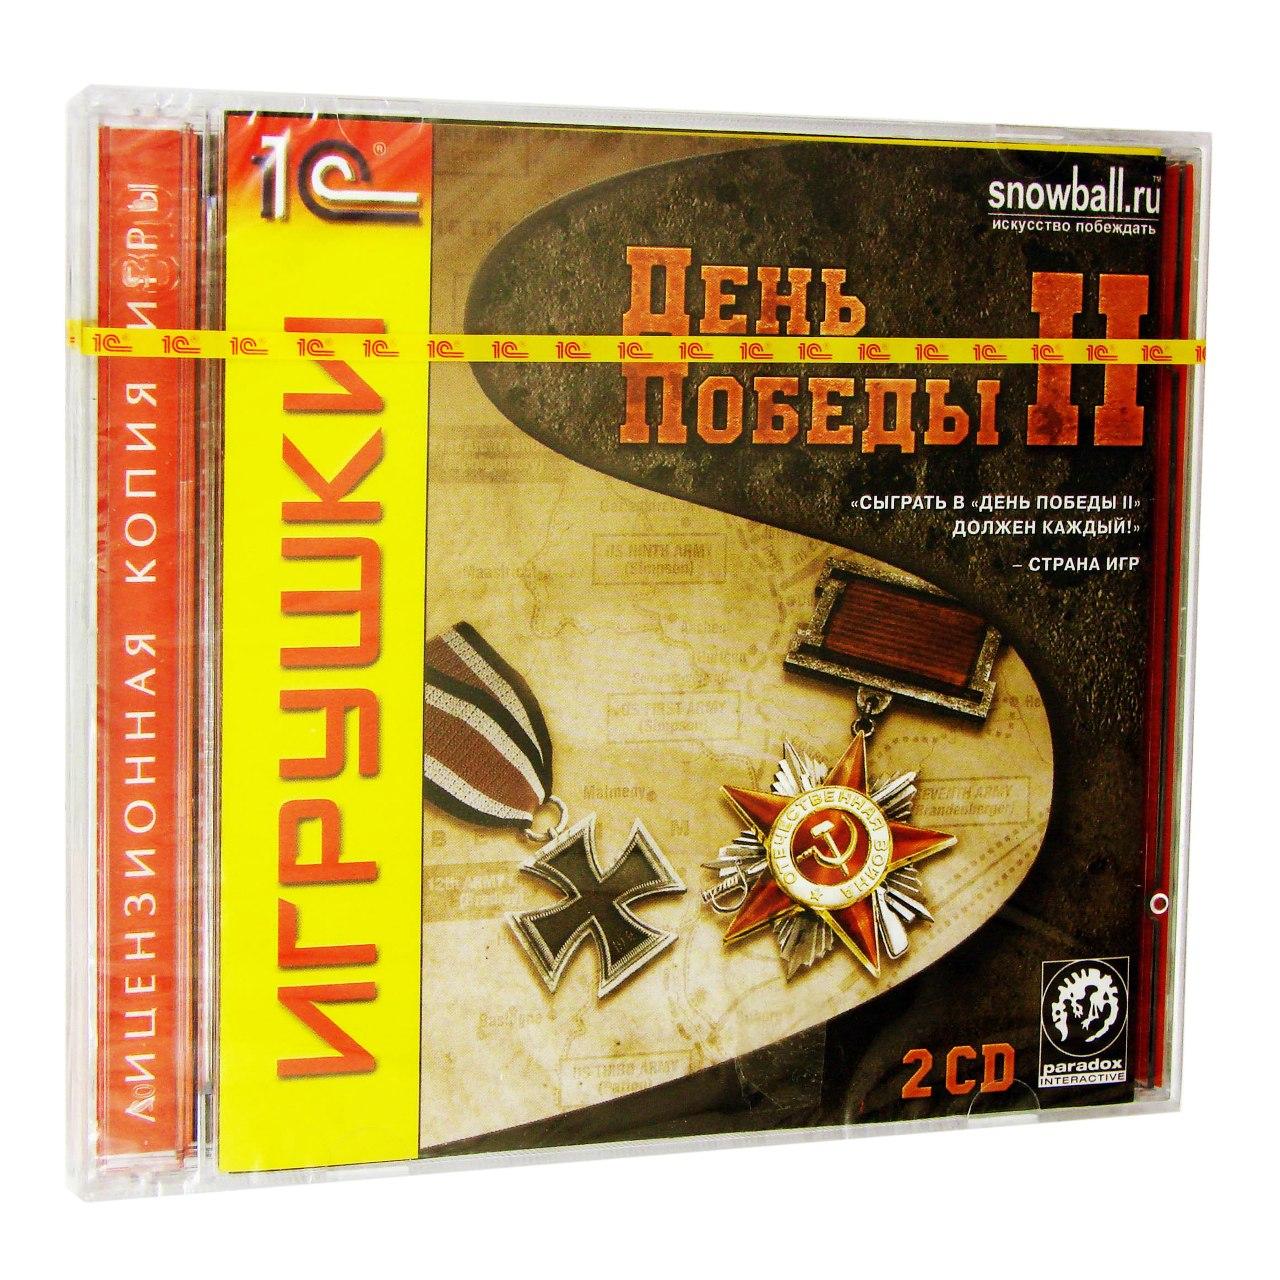 Компьютерный компакт-диск День победы 2 (ПК), фирма "1С", 2CD